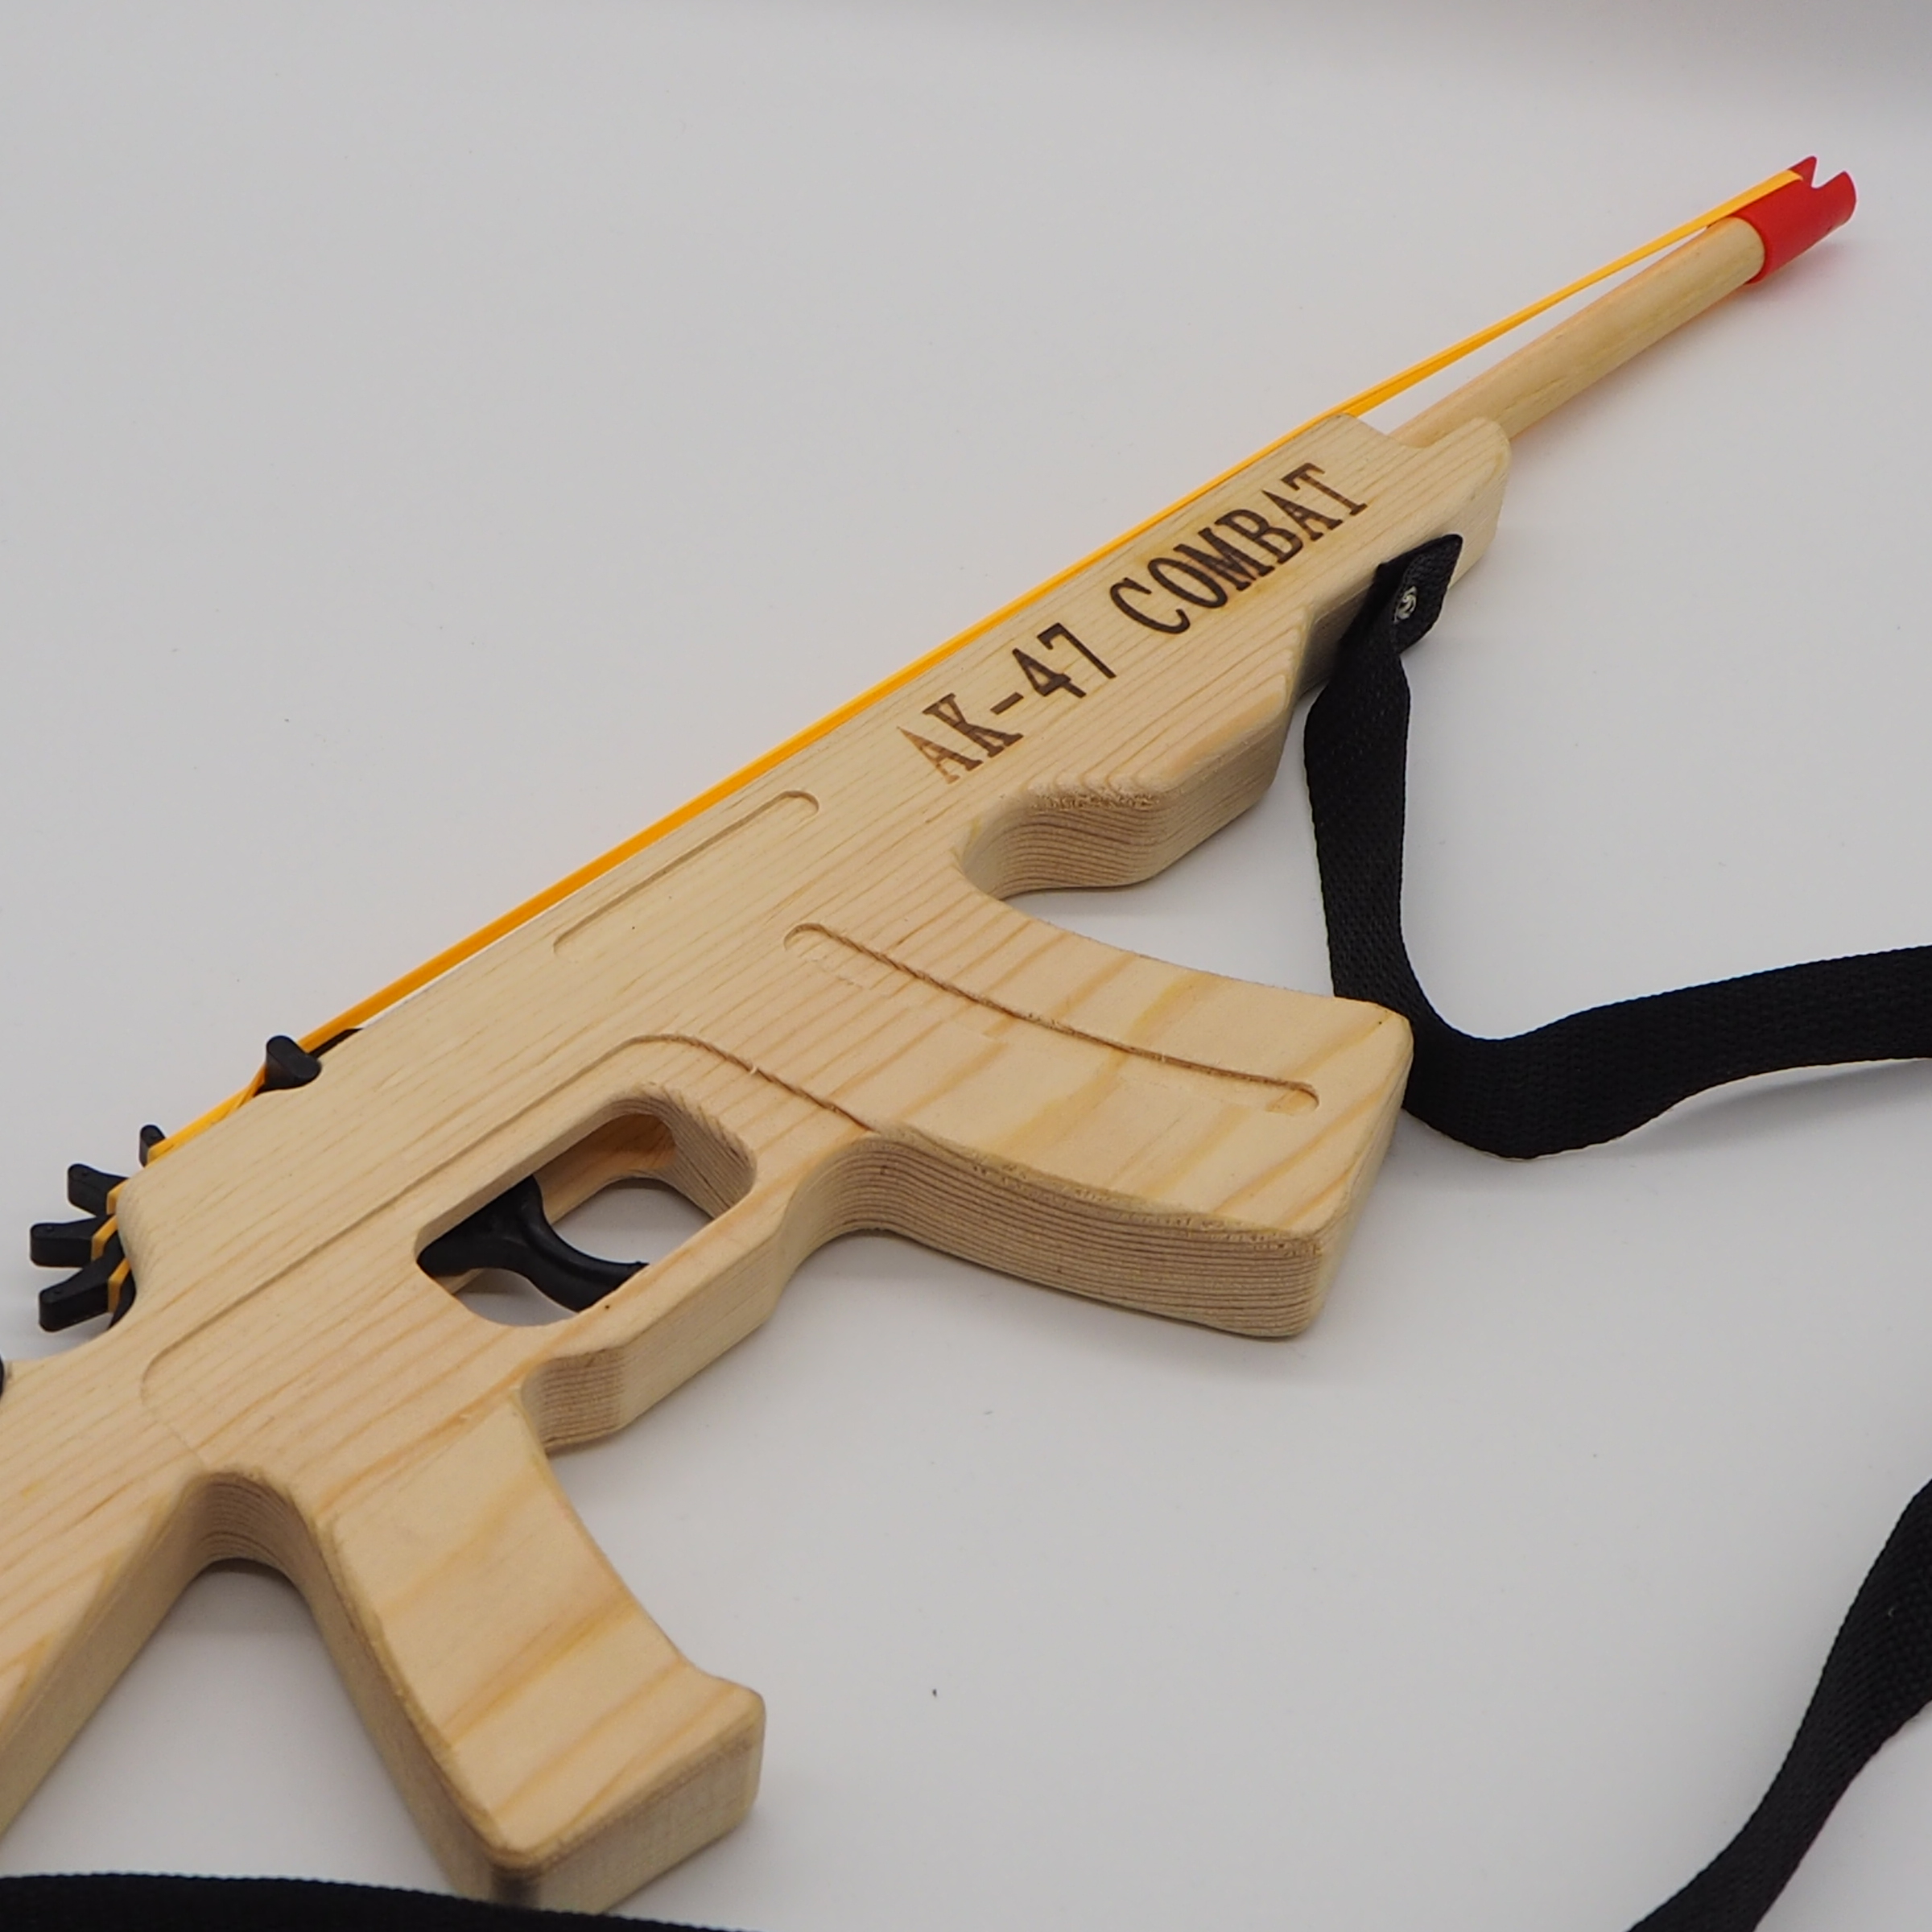 木质冲锋枪打橡皮筋长枪步枪模型怀旧儿童玩具木头枪精品工艺品-阿里巴巴